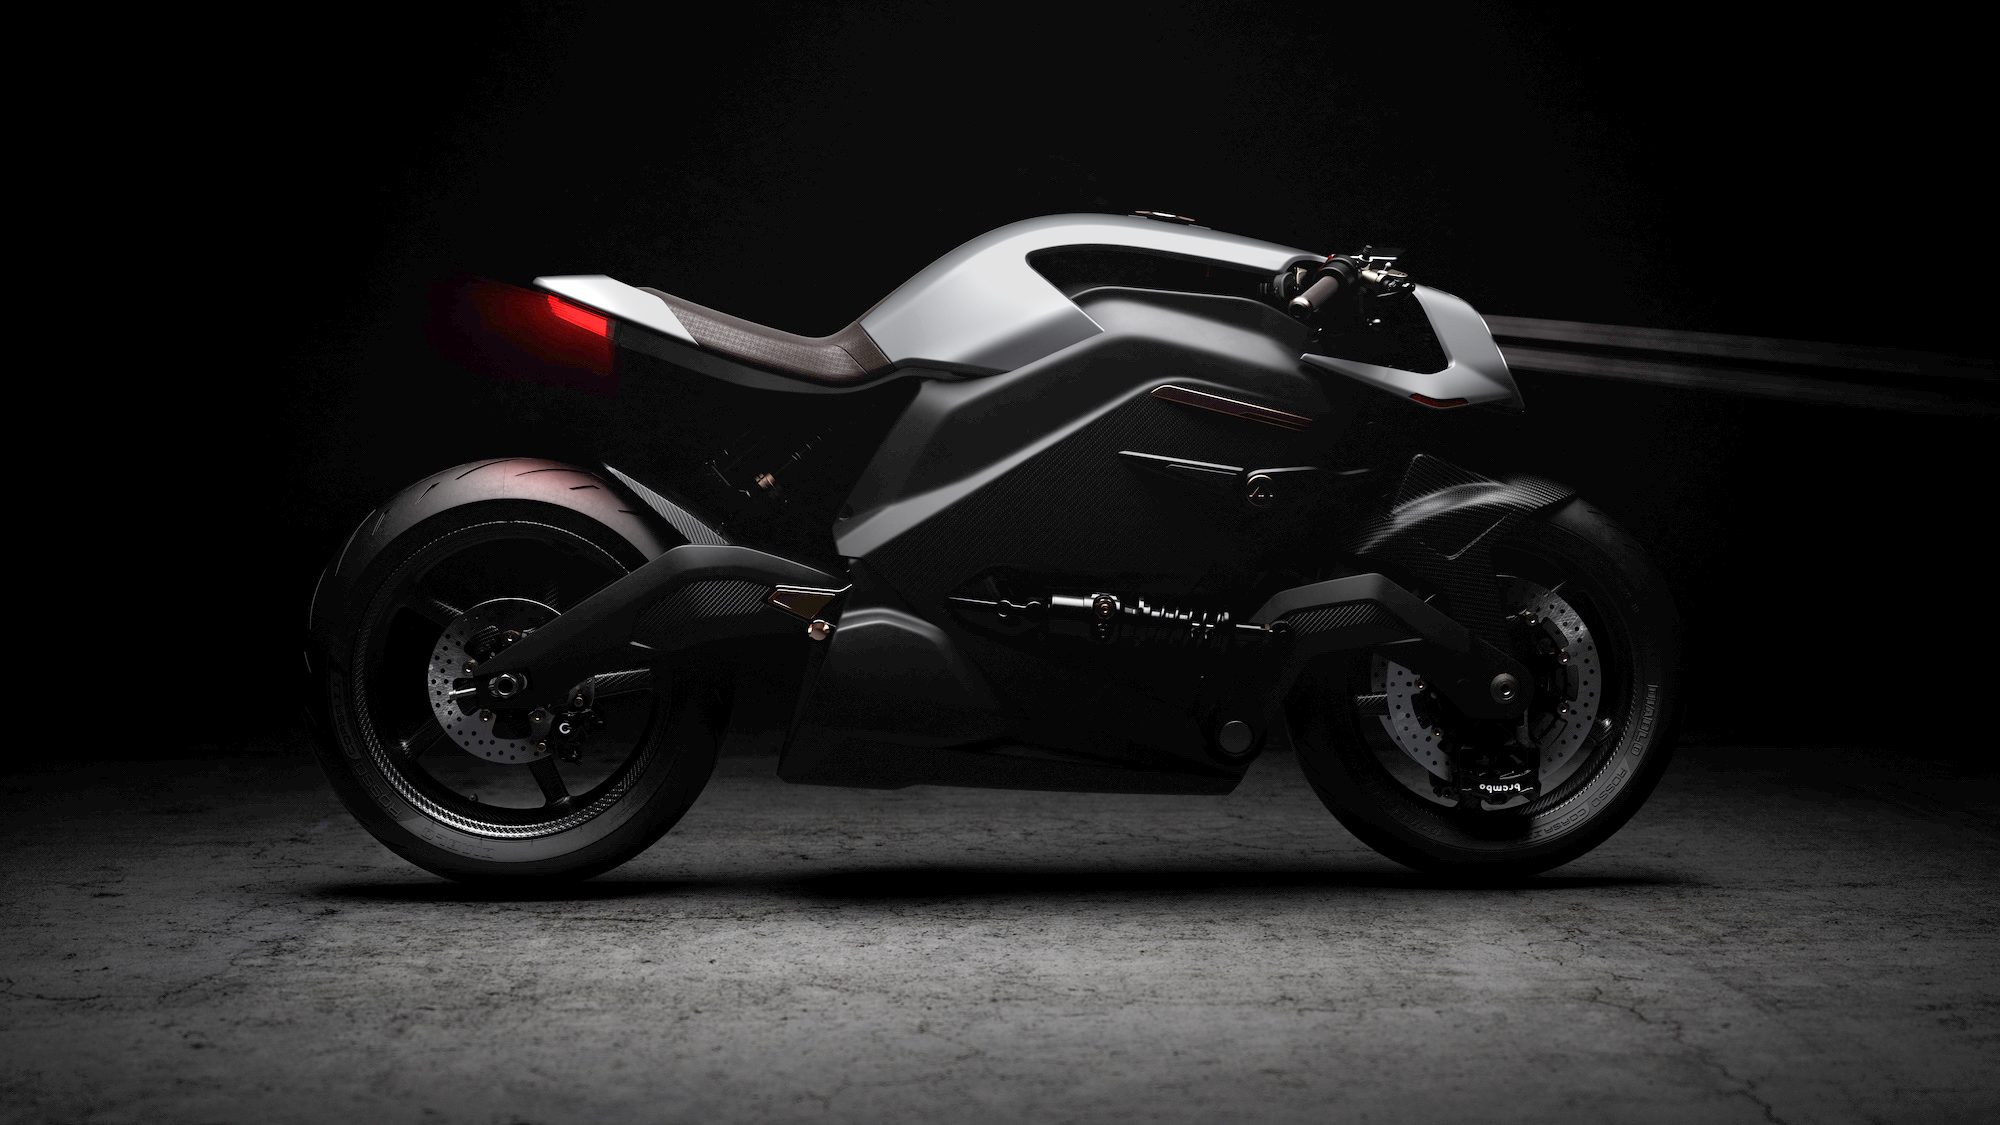 ARC_VECTOR_ev-electric motorcycle